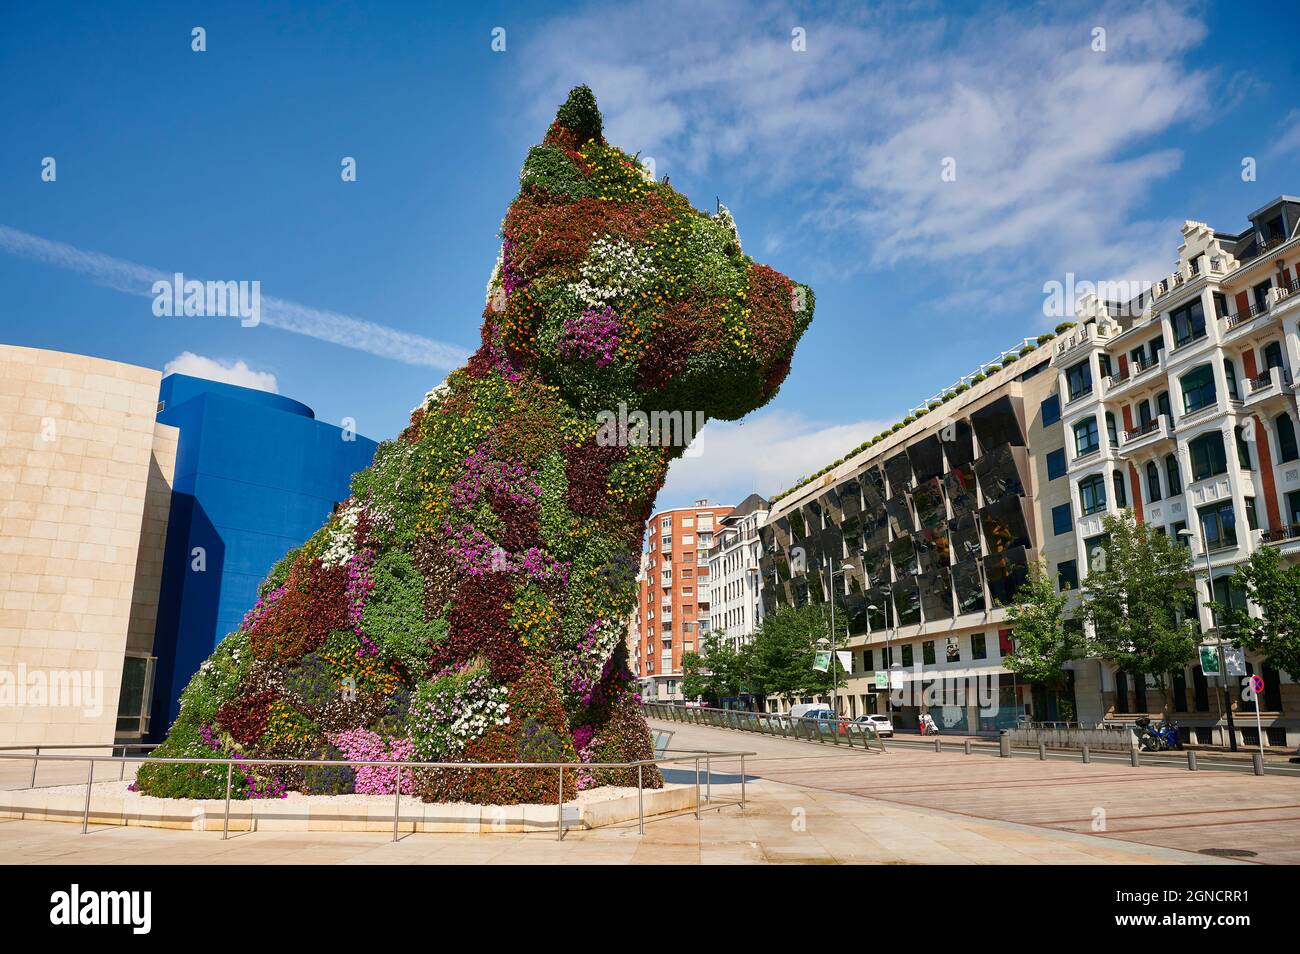 Vue sur le 'Puppy' la célèbre sculpture de Jeff Koons en plein air du musée Guggenheim, Bilbao, Gascogne, pays Basque Banque D'Images